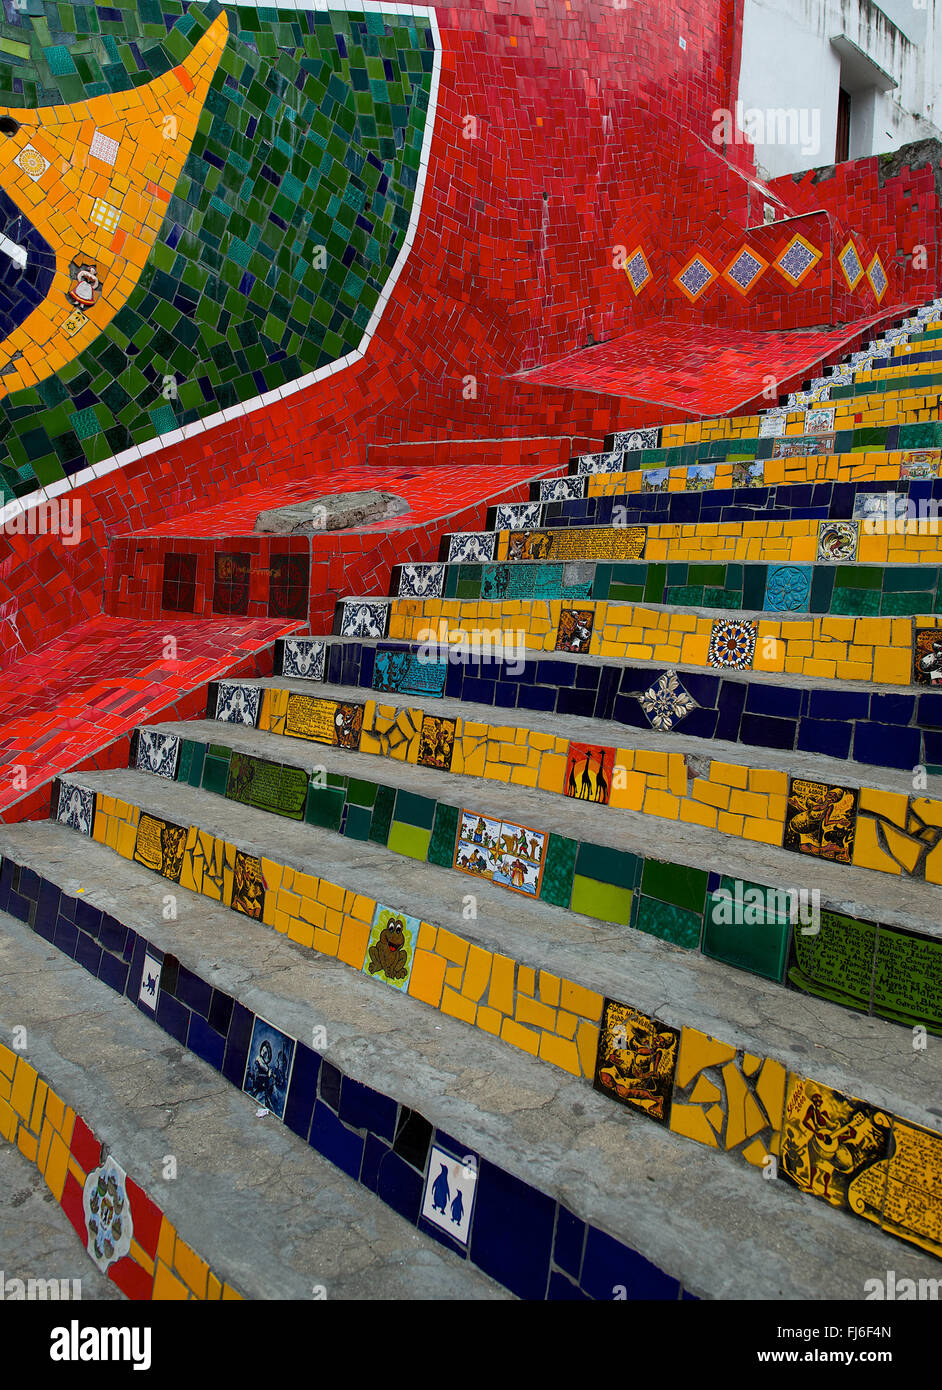 Escadaria Selarón, also known as the 'Selaron Steps', is a set of world-famous steps in Rio de Janeiro, Brazil. Stock Photo